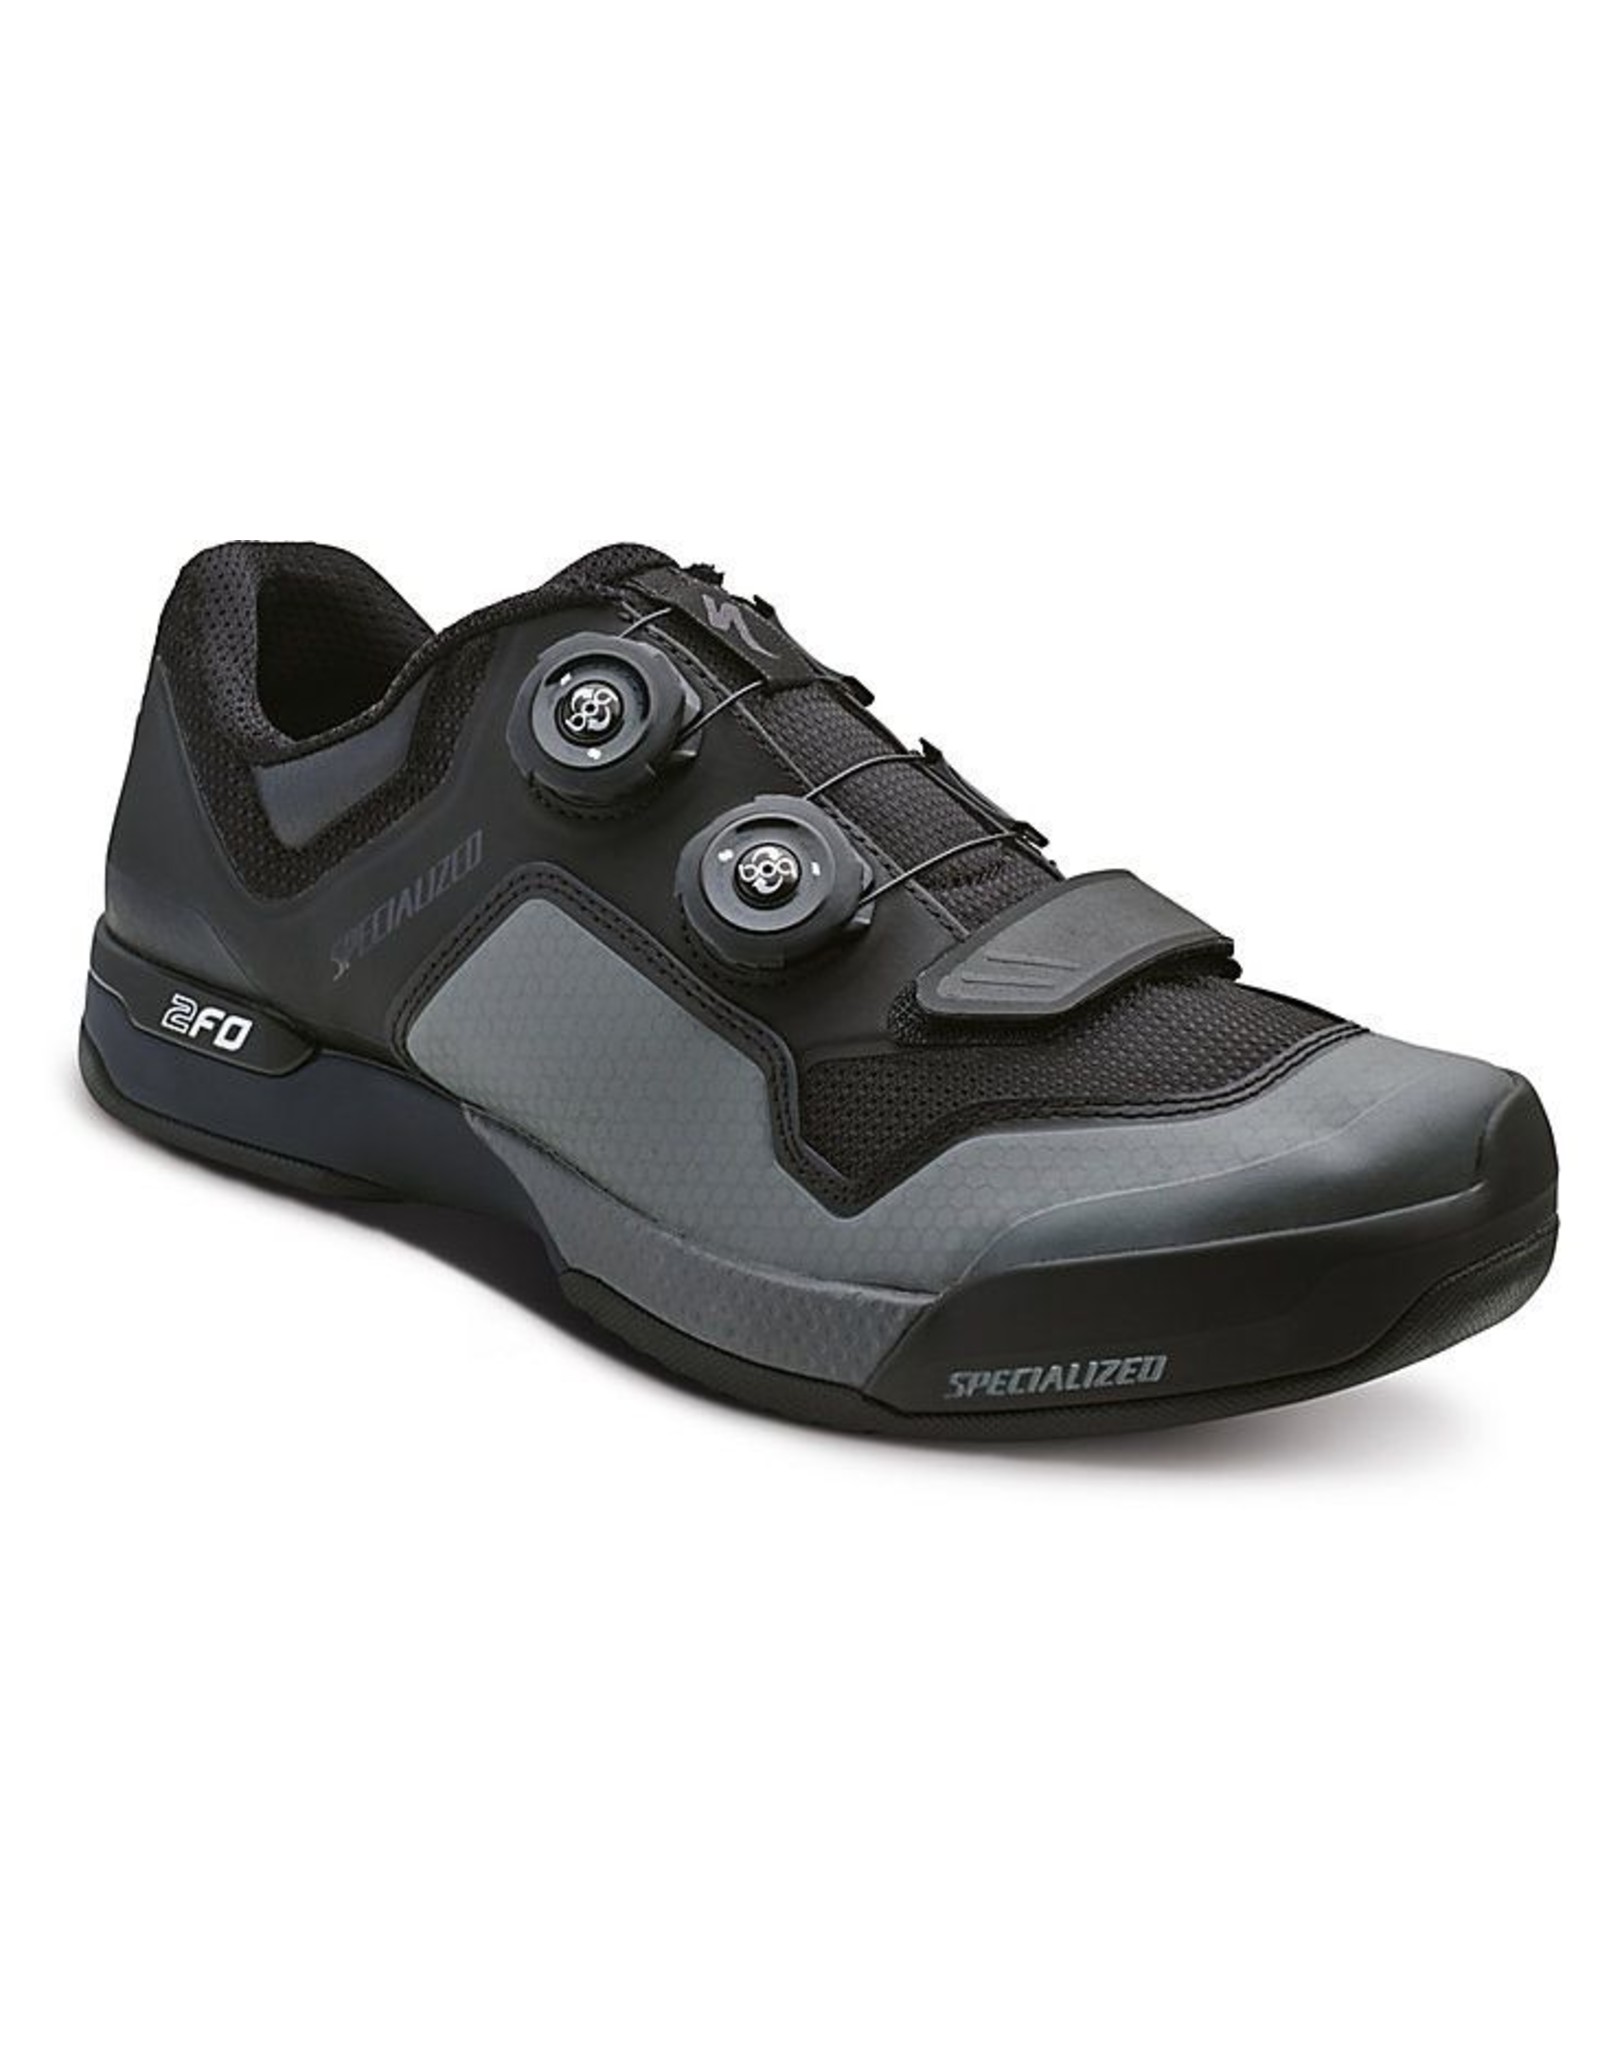 SPECIALIZED Specialized 2FO Cliplite MTB Shoe - Black/Dark Grey - 40